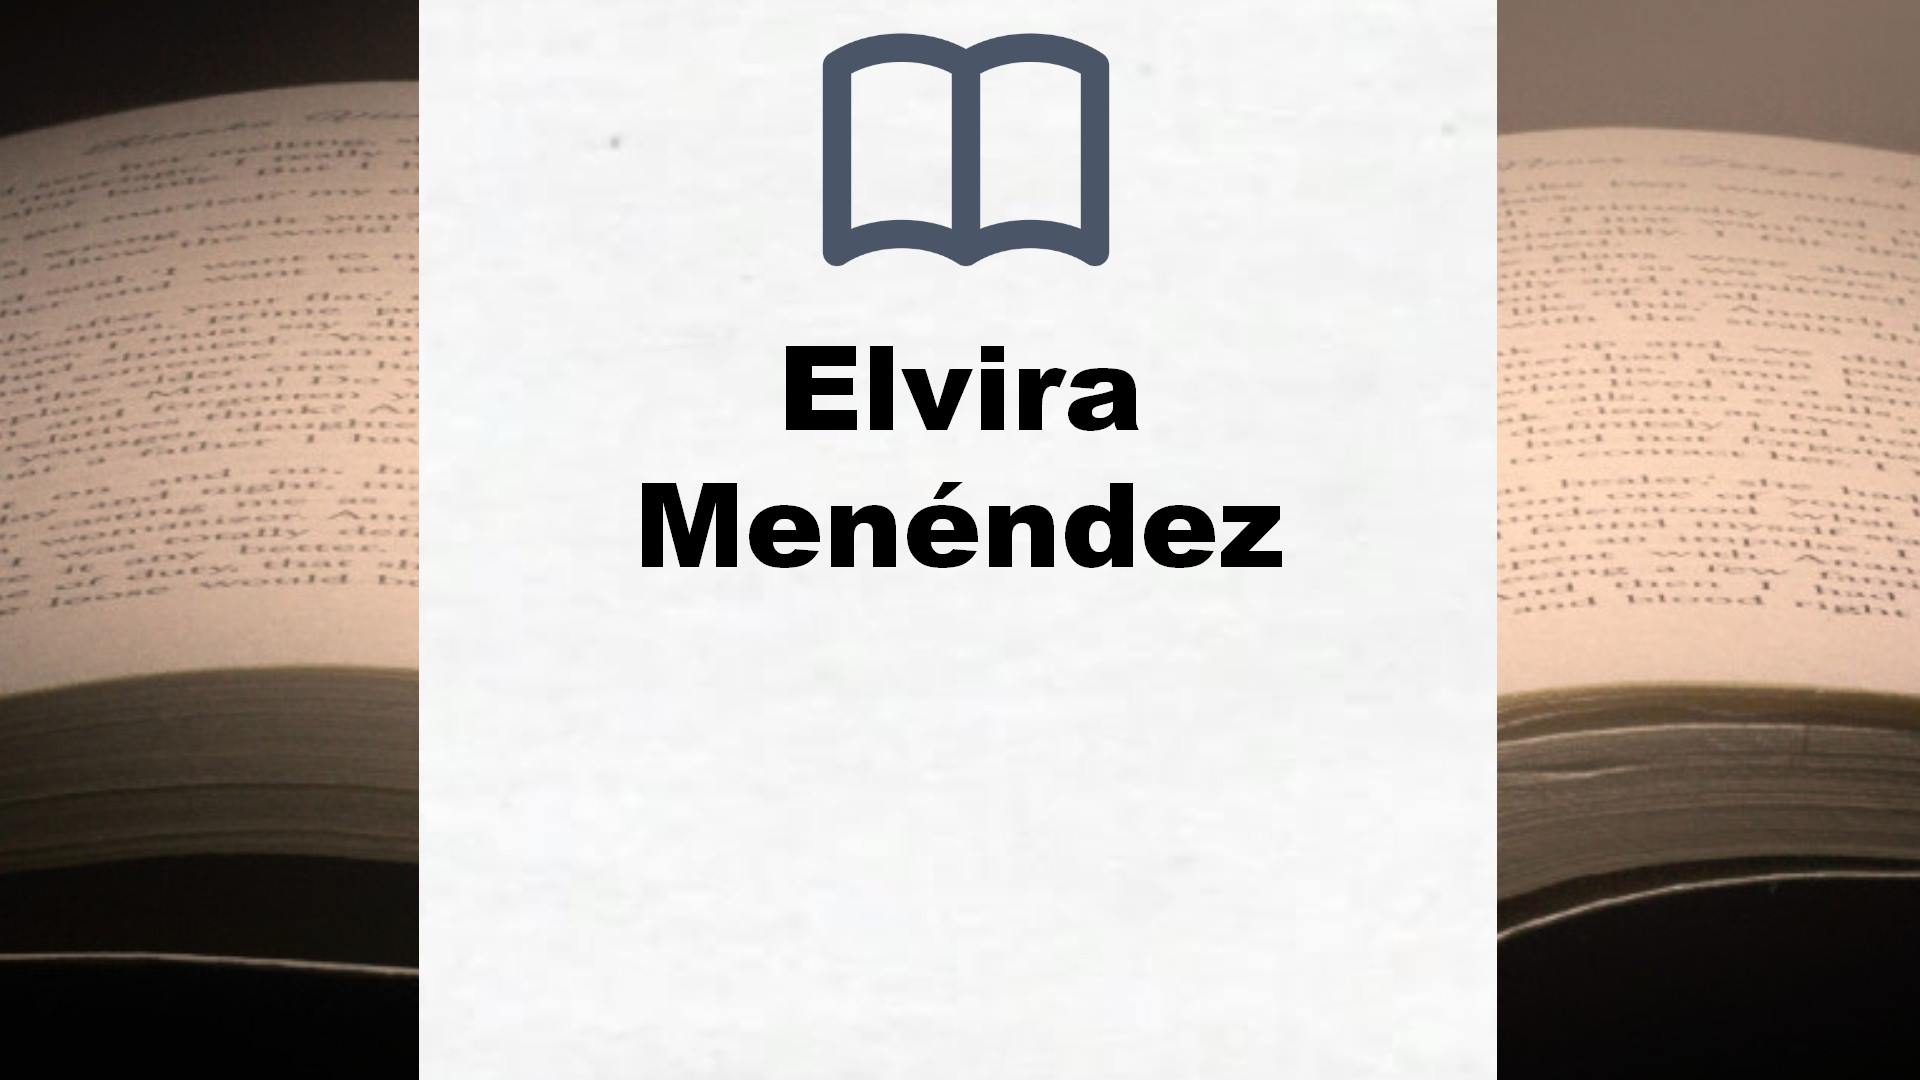 Libros Elvira Menéndez